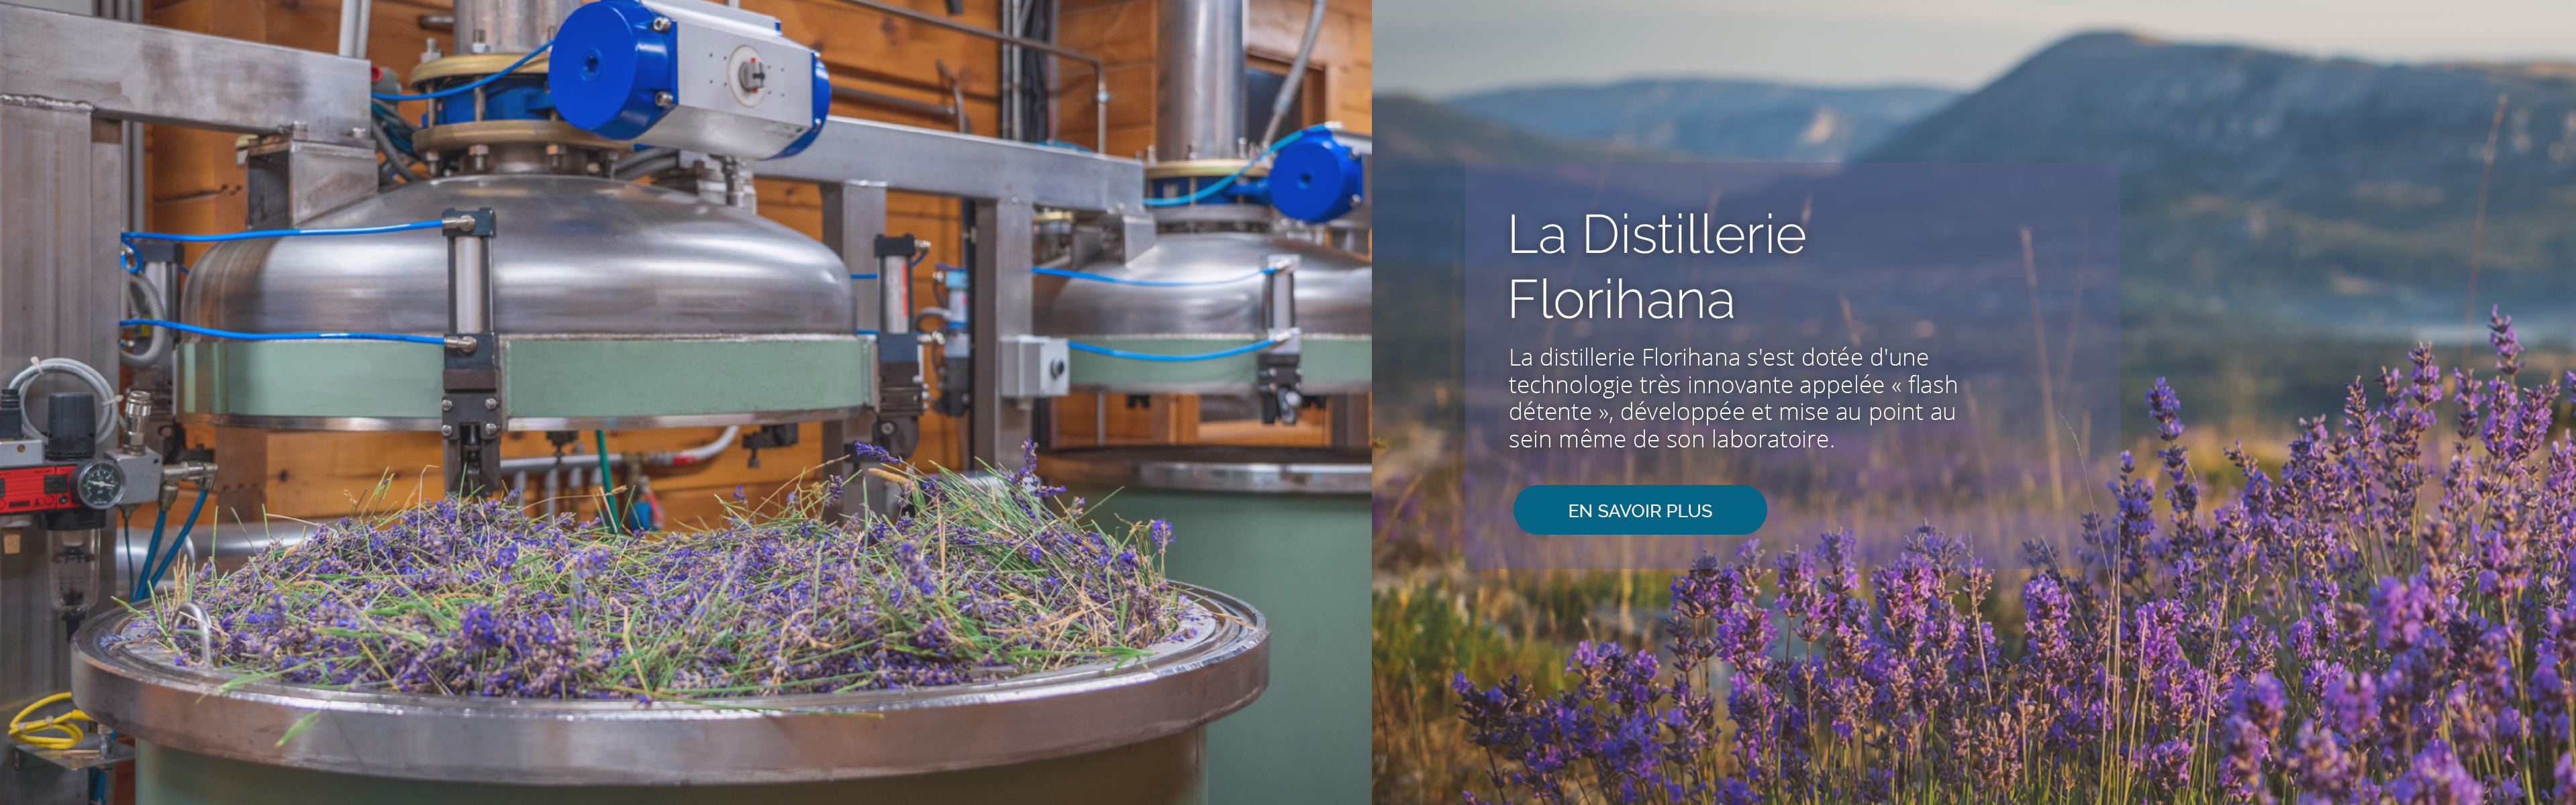 La distillerie Florihana s'est dotée d'une technologie très innovante appelée « flash détente », développée et mise au point au sein même de son laboratoire.